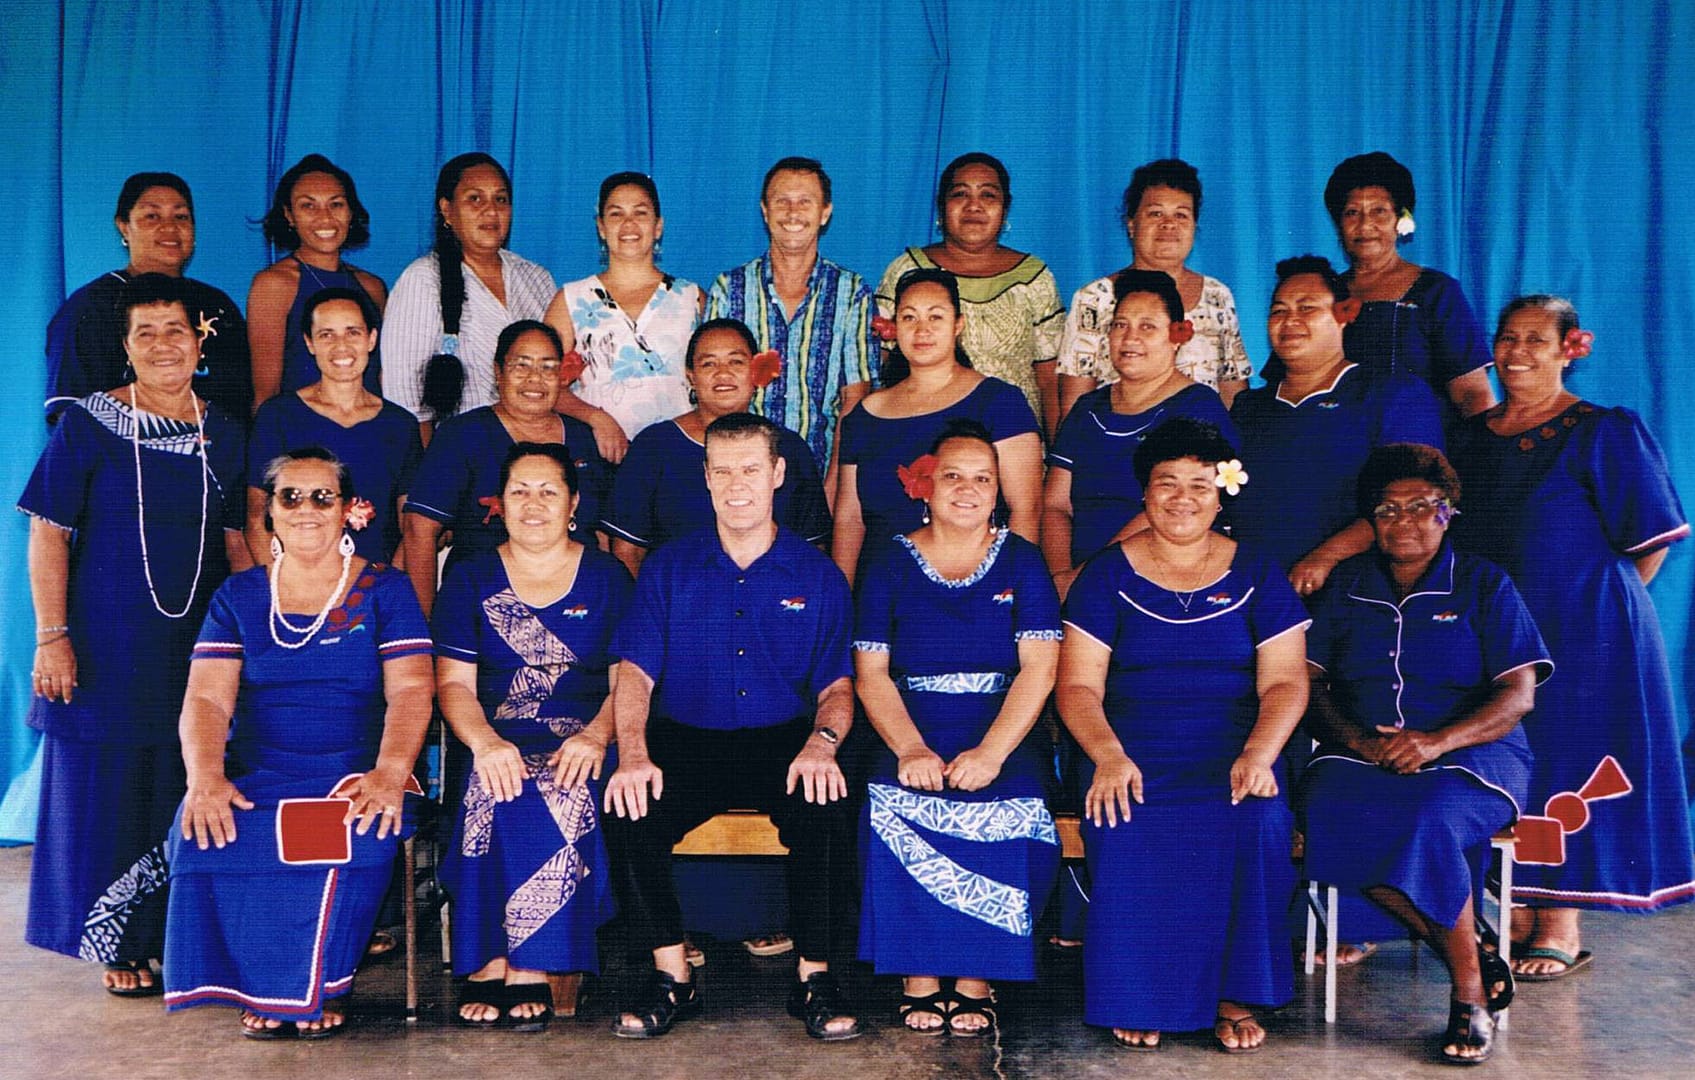 2004 Staff